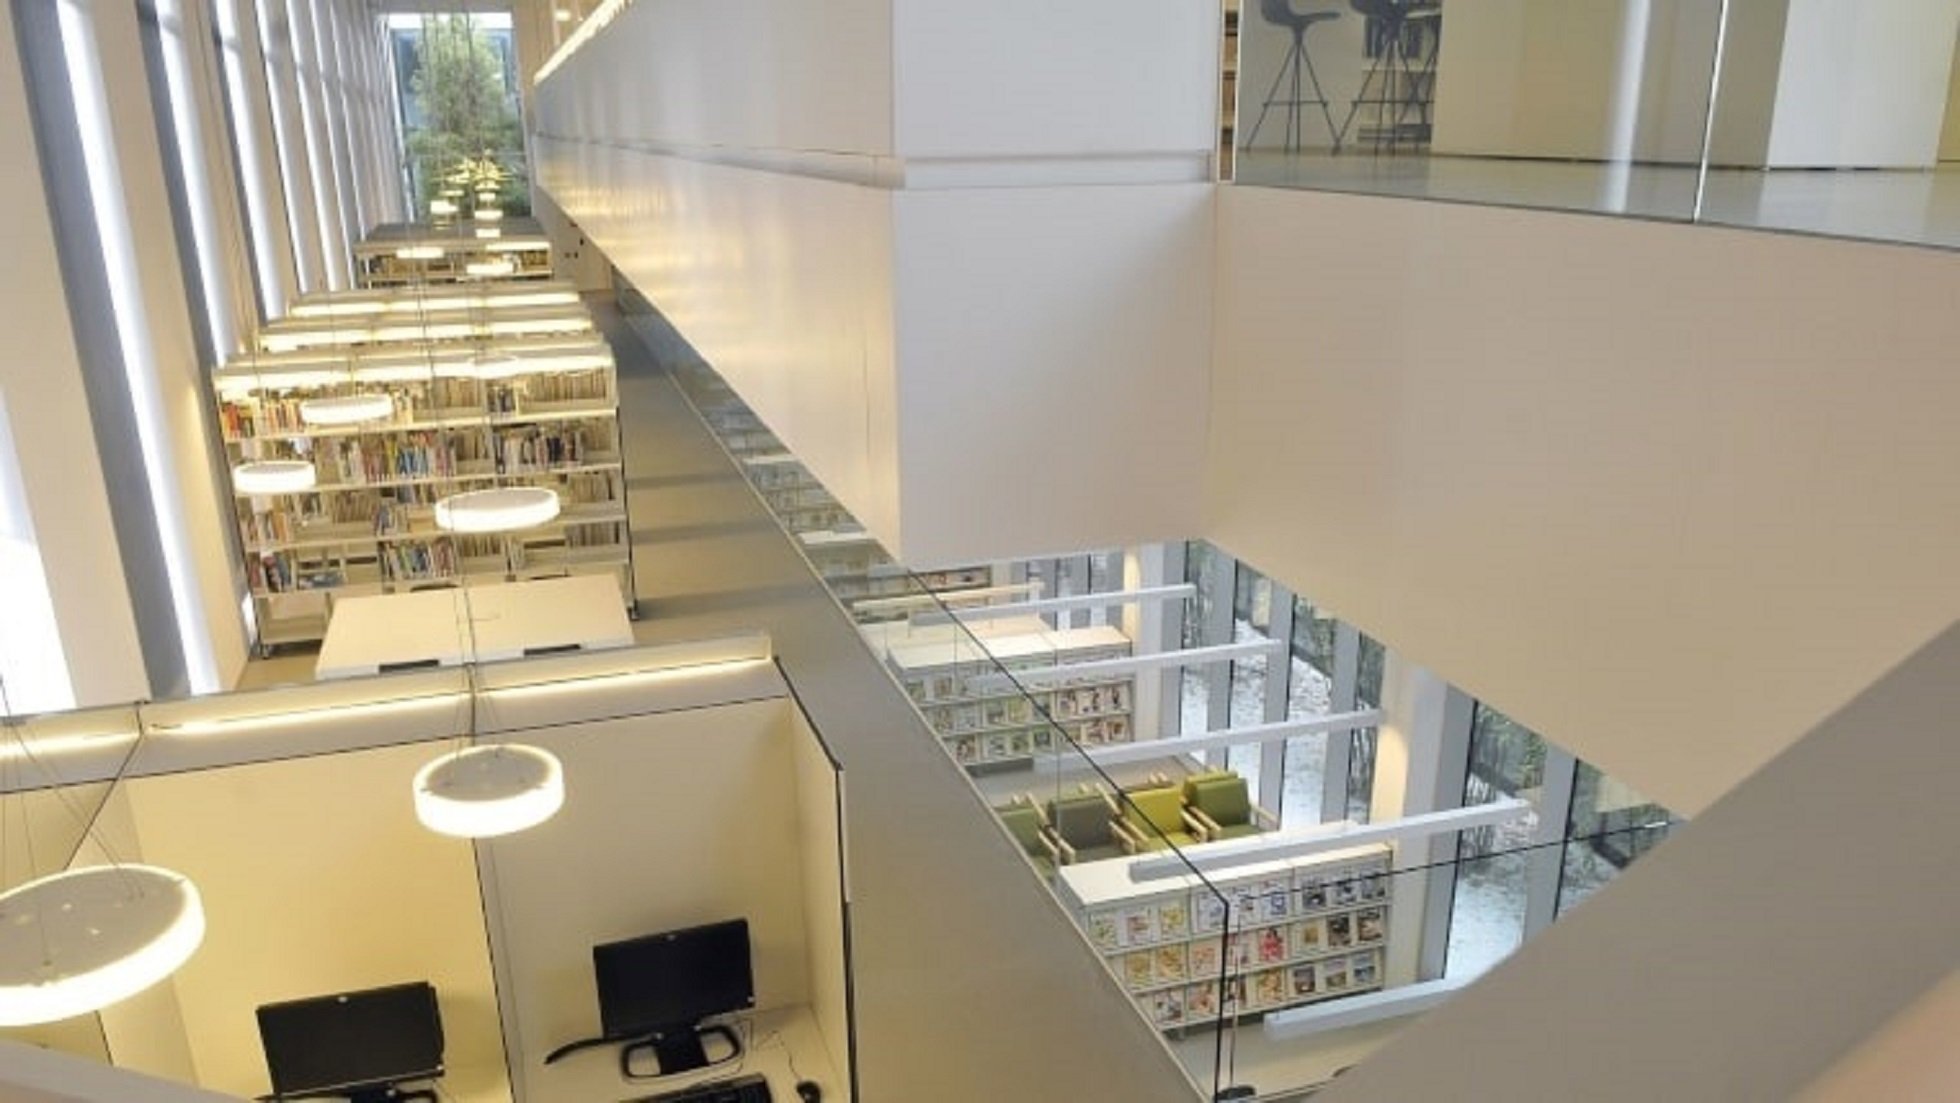 Vaga a les biblioteques de Barcelona el 9 de febrer per reclamar millores laborals